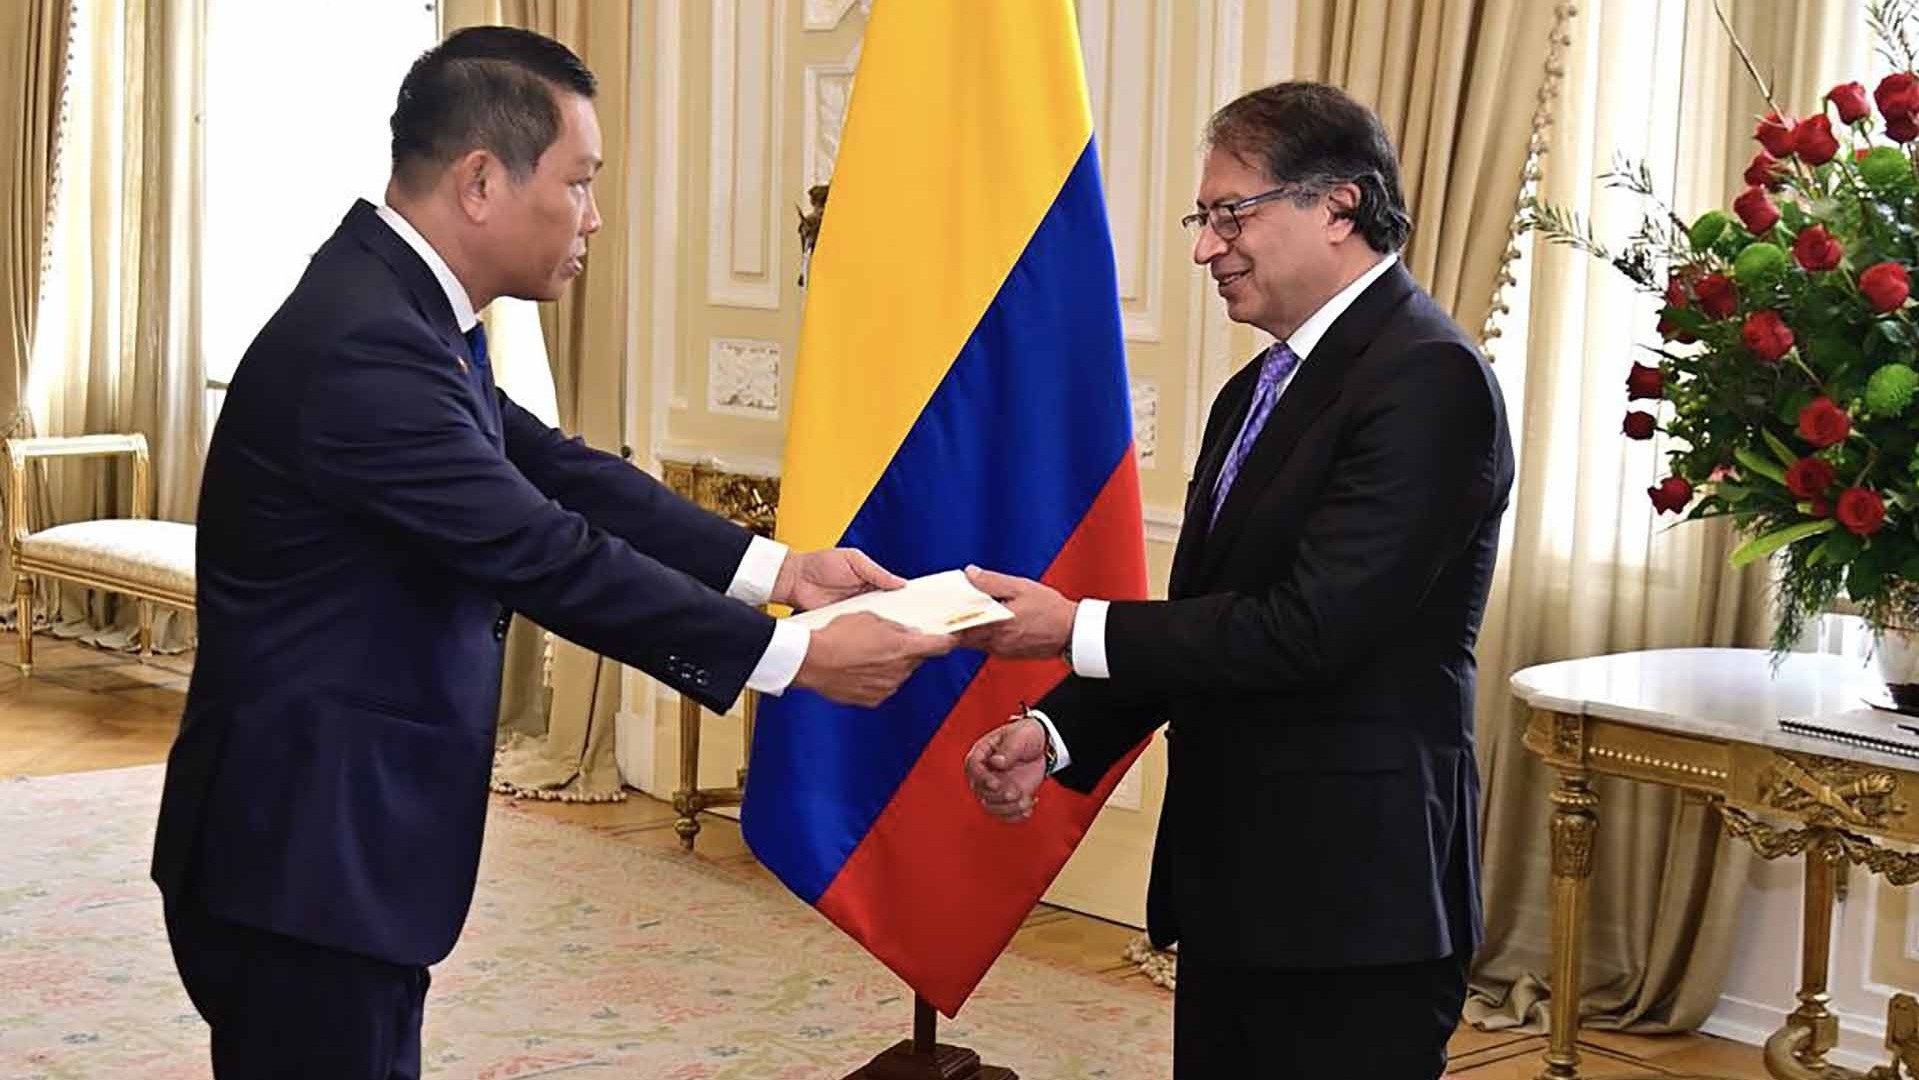 Đại sứ Vũ Trung Mỹ trình Thư ủy nhiệm lên Tổng thống Colombia